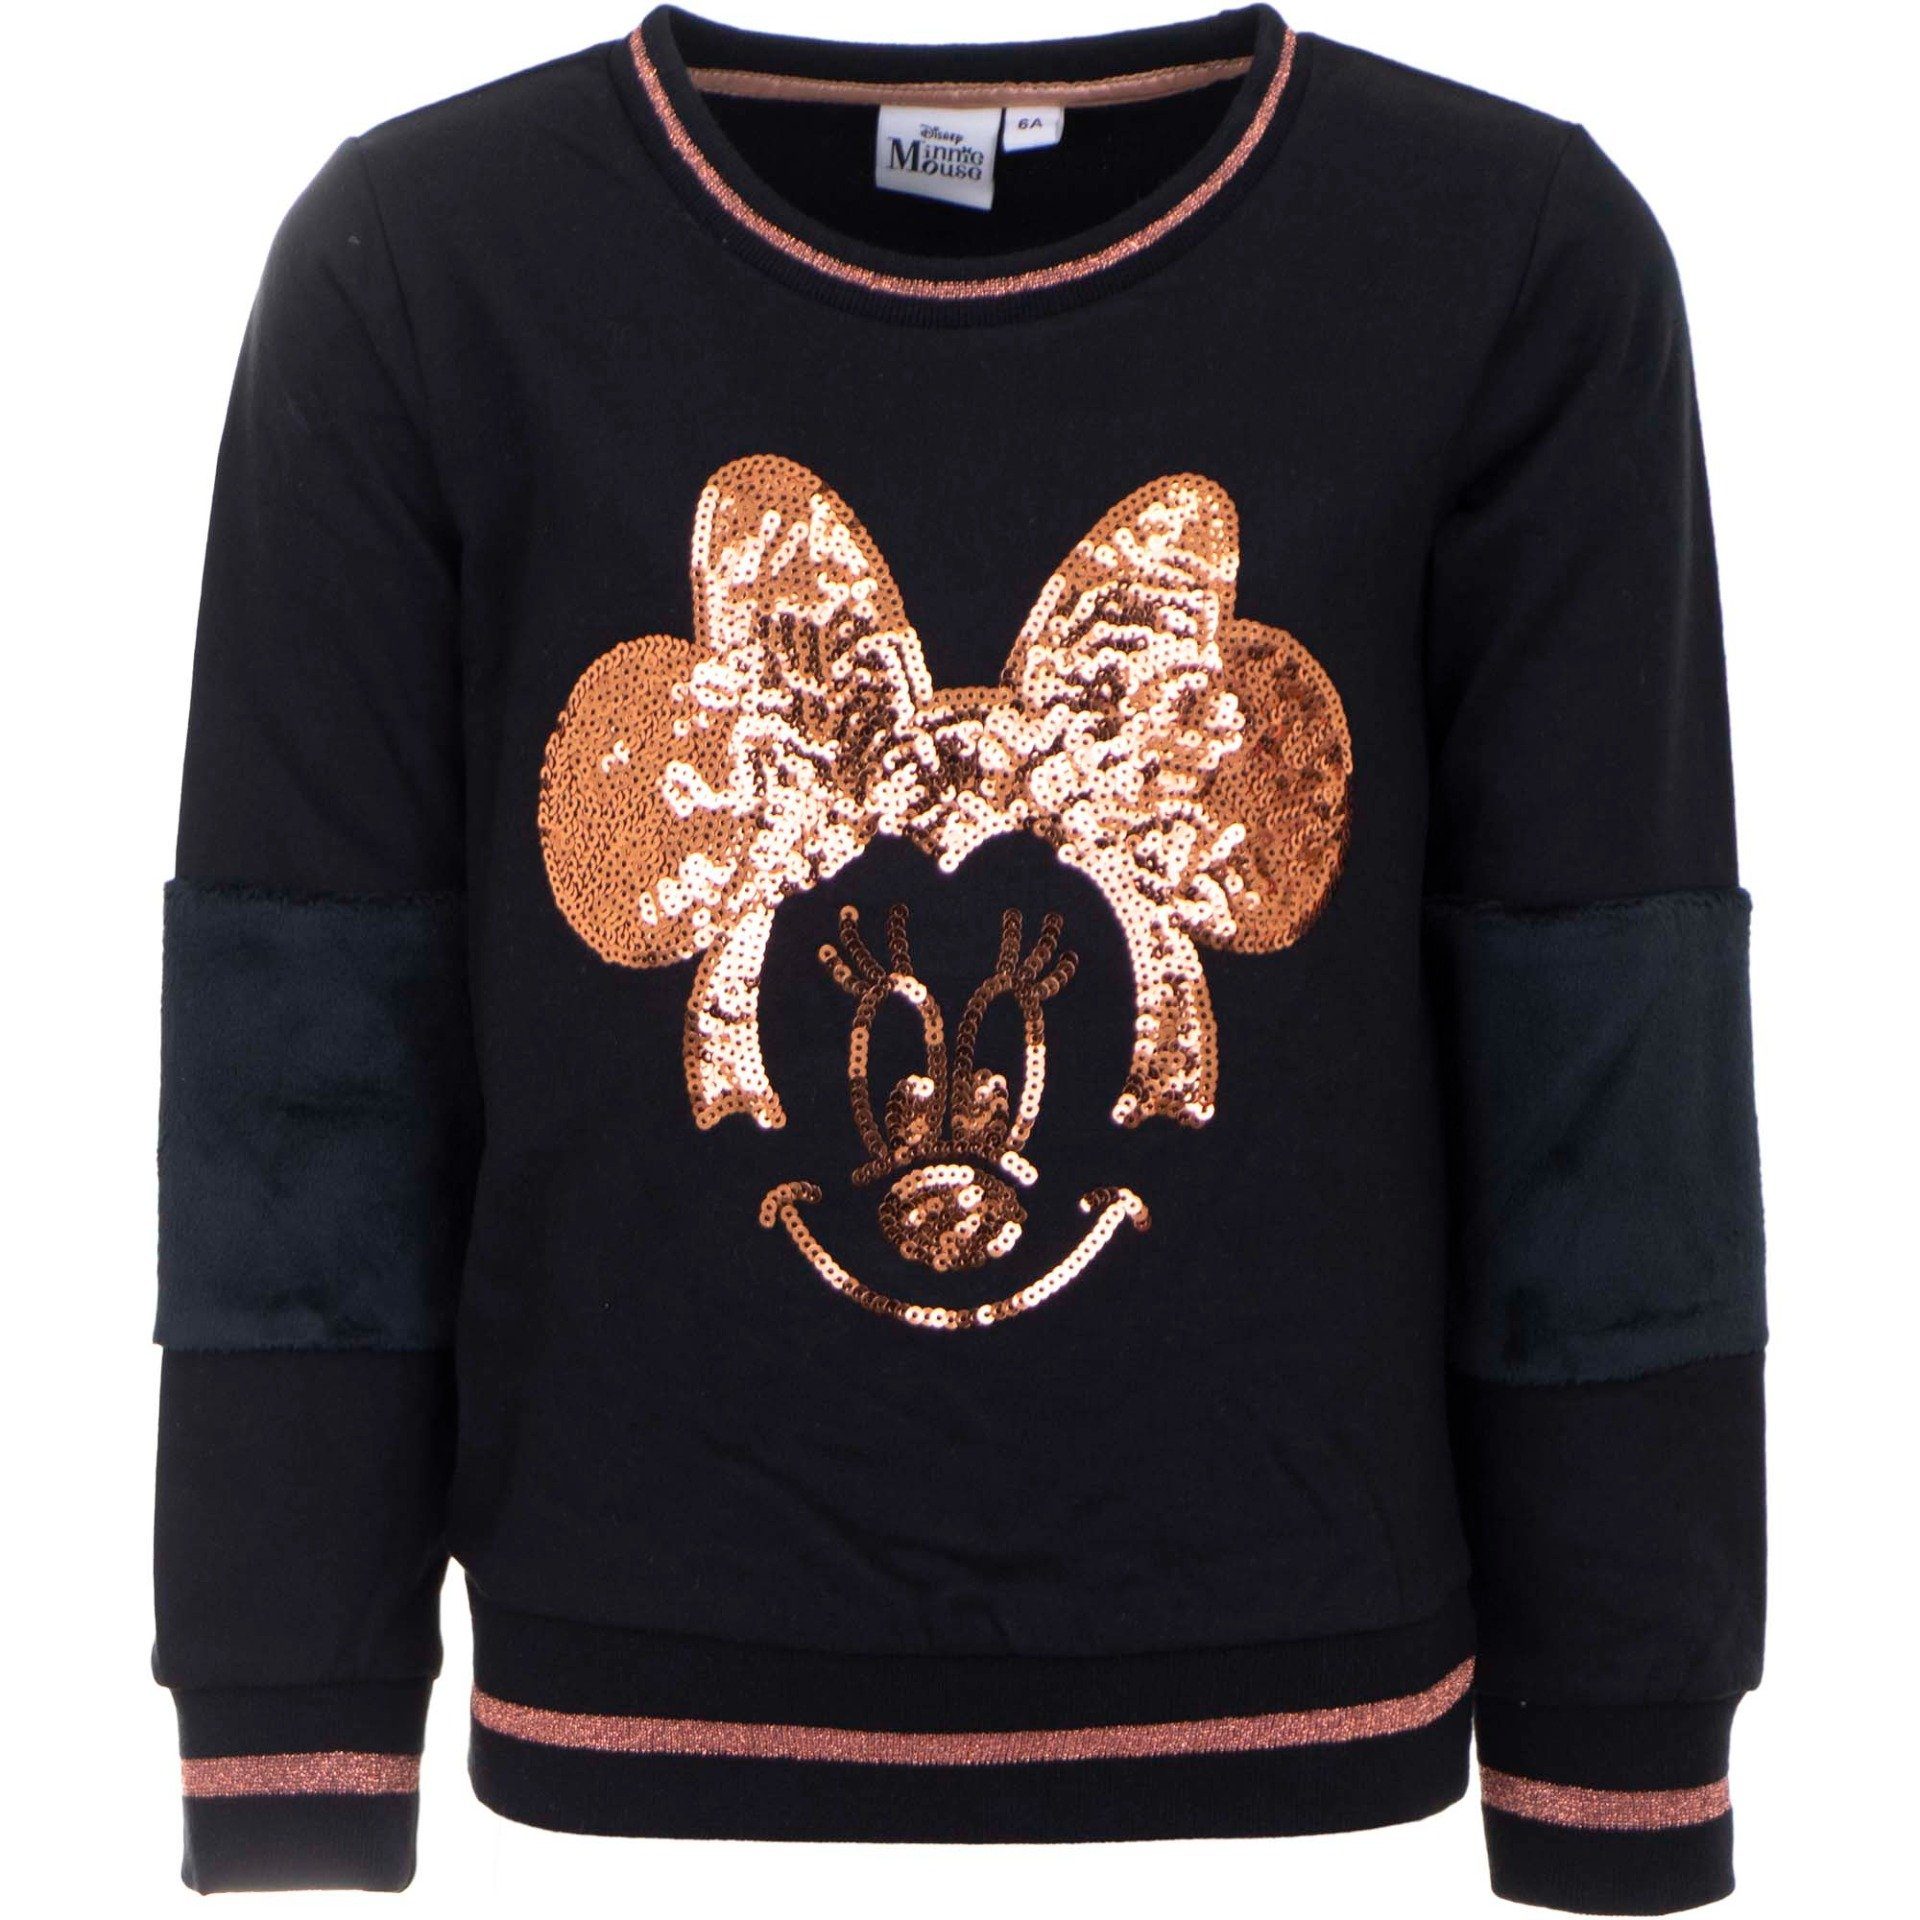 Disney Minnie Mouse Sweater »Kinder Pailletten Pulli« Gr. 98 bis 128, 100%  Baumwolle, Altrosa oder Schwarz online kaufen | OTTO